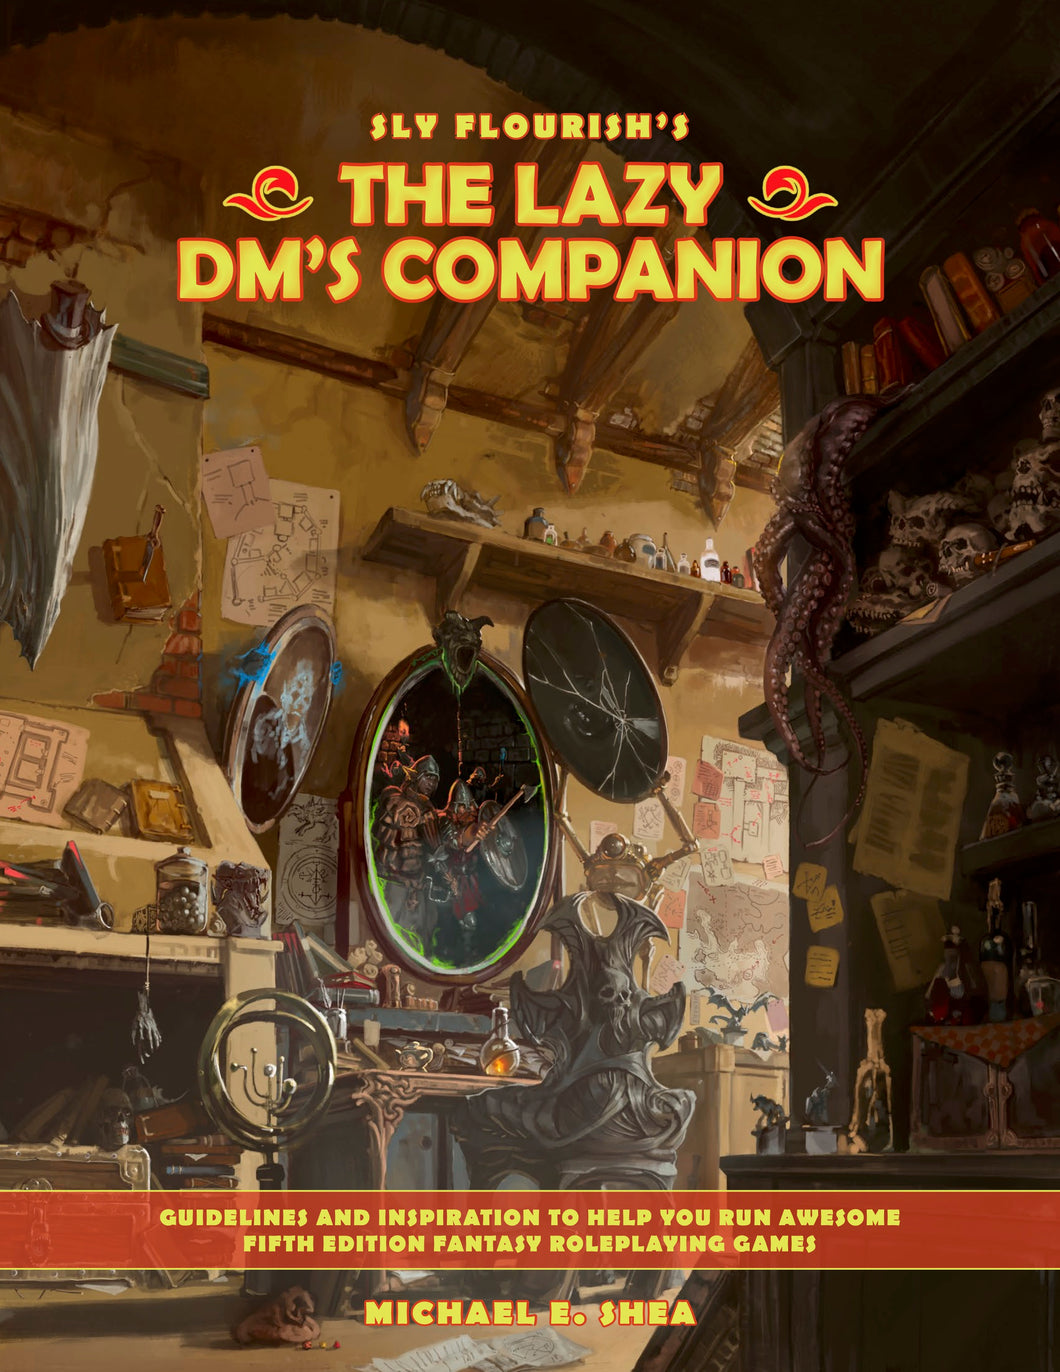 The Lazy DM's Companion